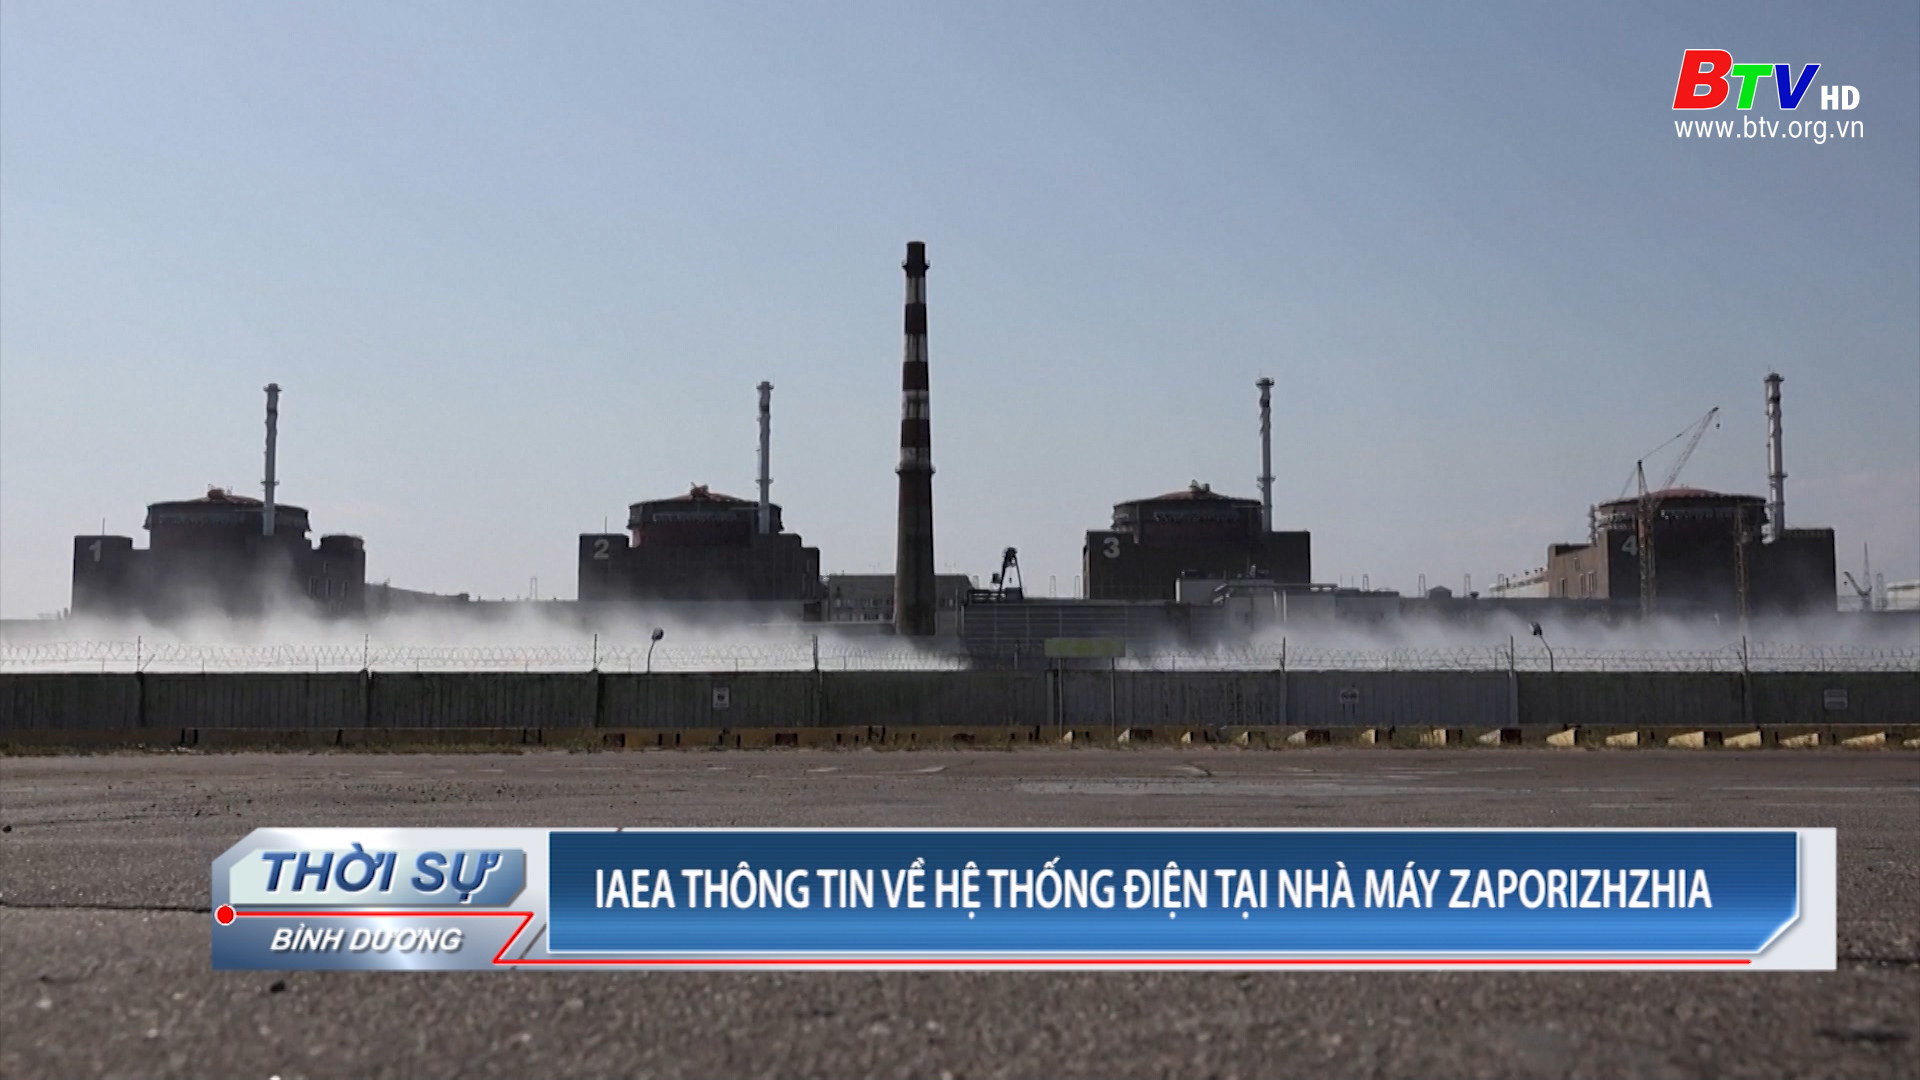 IAEA thông tin về hệ thống điện tại nhà máy Zaporizhzhia